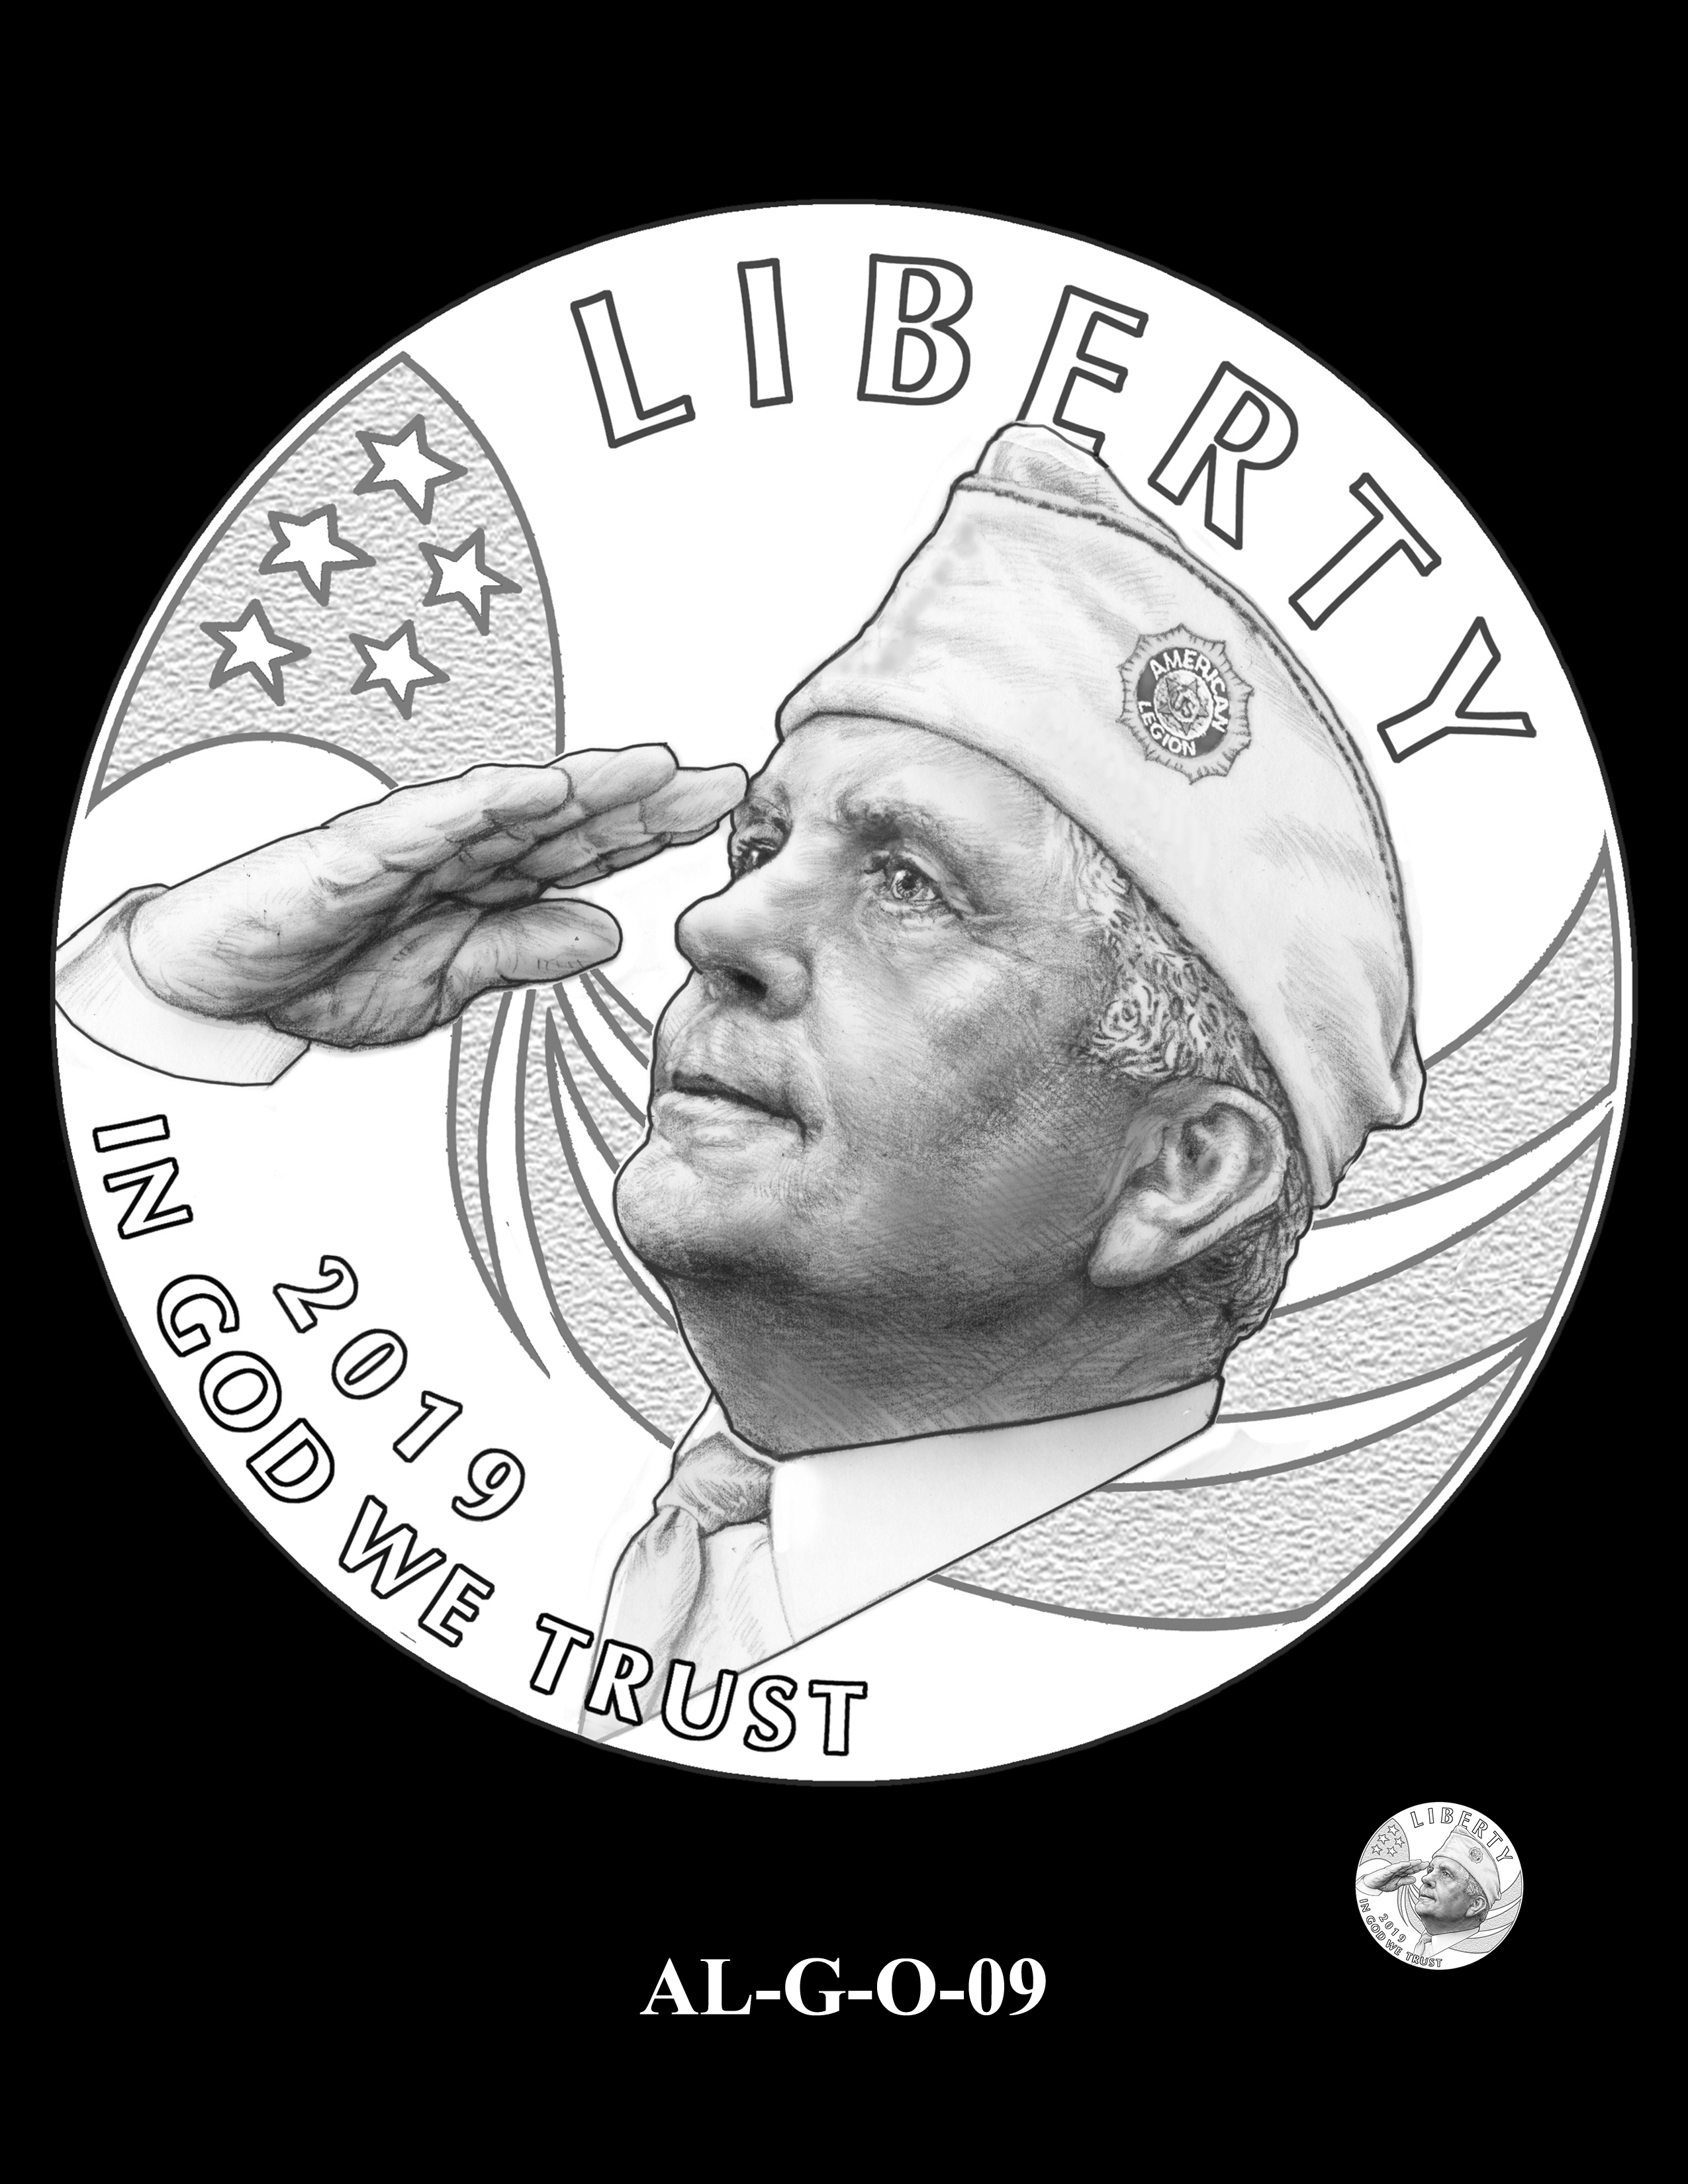 AL-G-O-09 -- 2019 American Legion 100th Anniversary Commemorative Coin Program - Gold Obverse